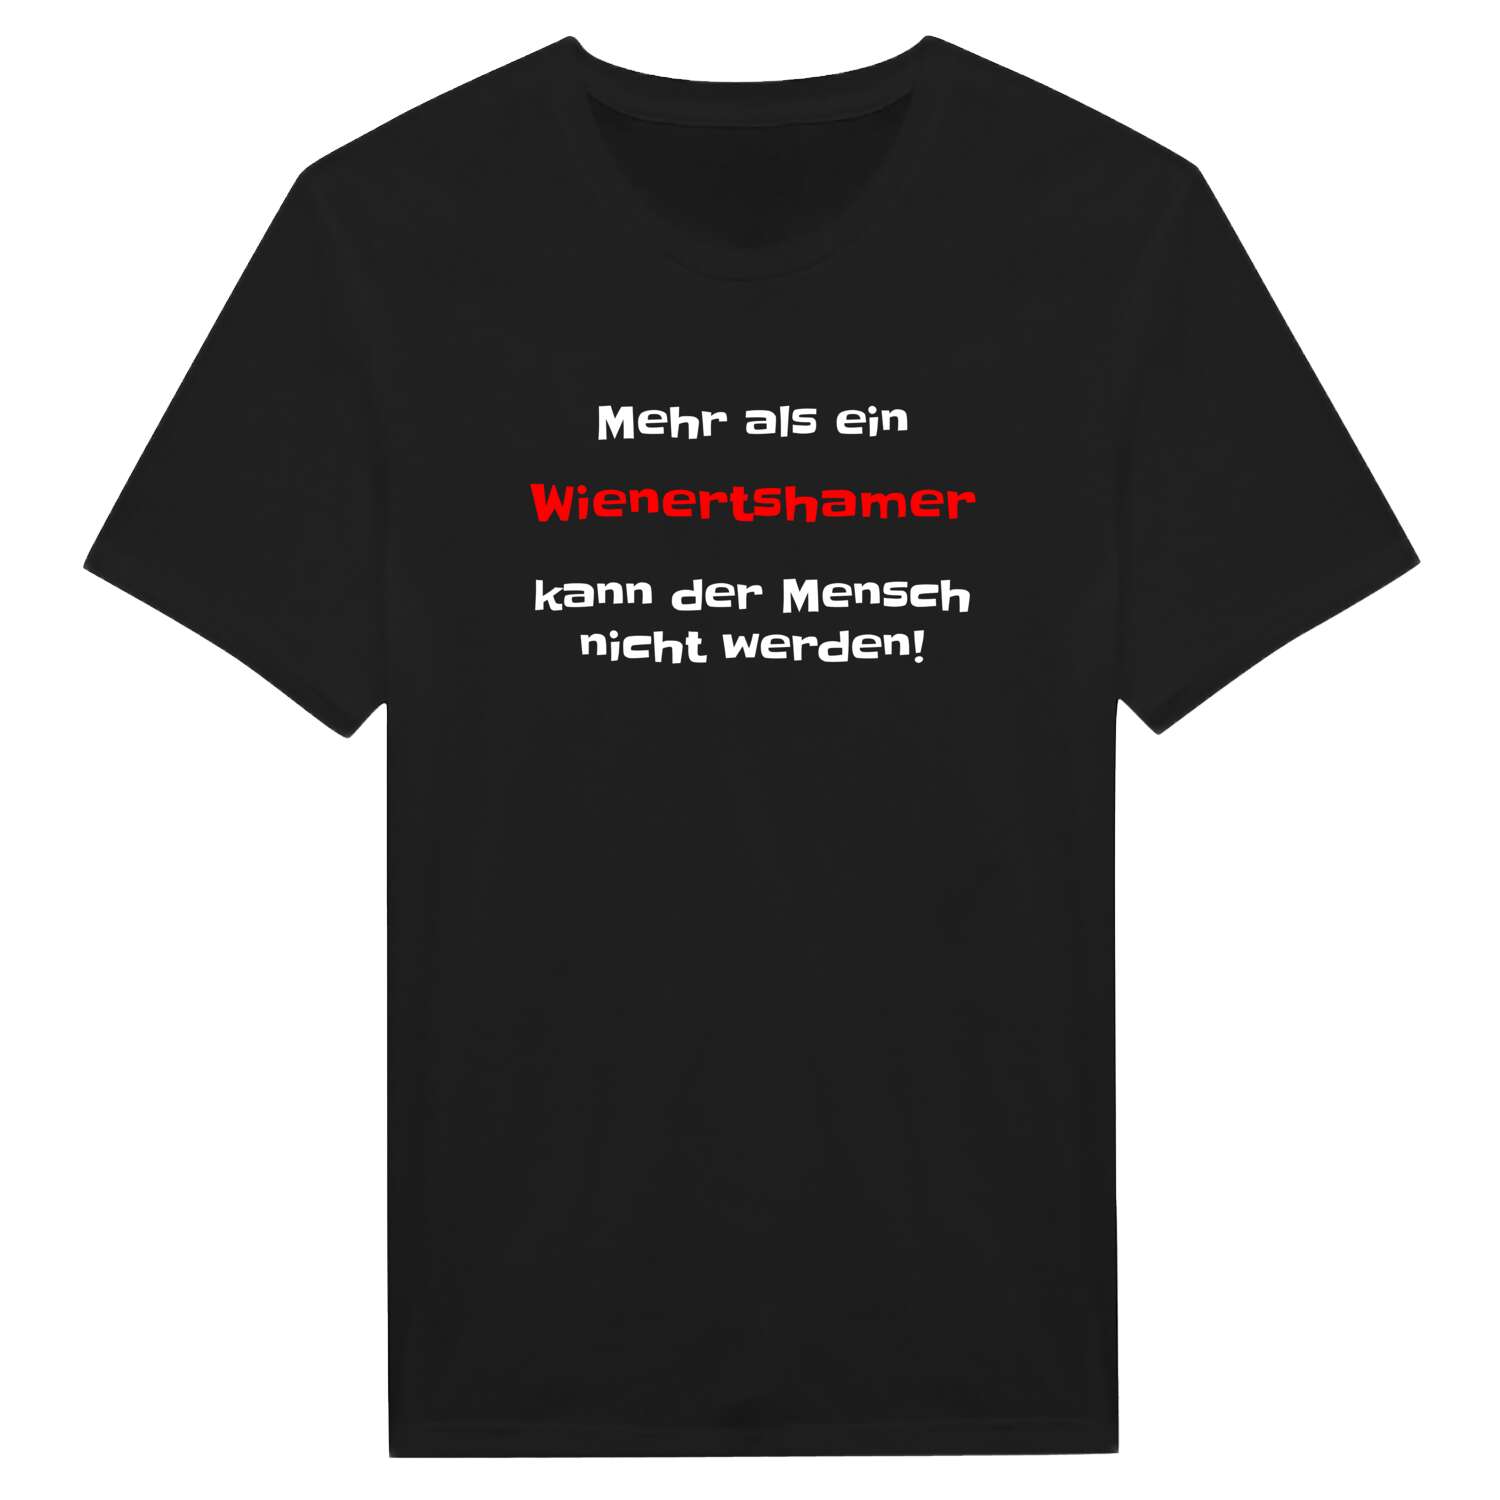 Wienertsham T-Shirt »Mehr als ein«